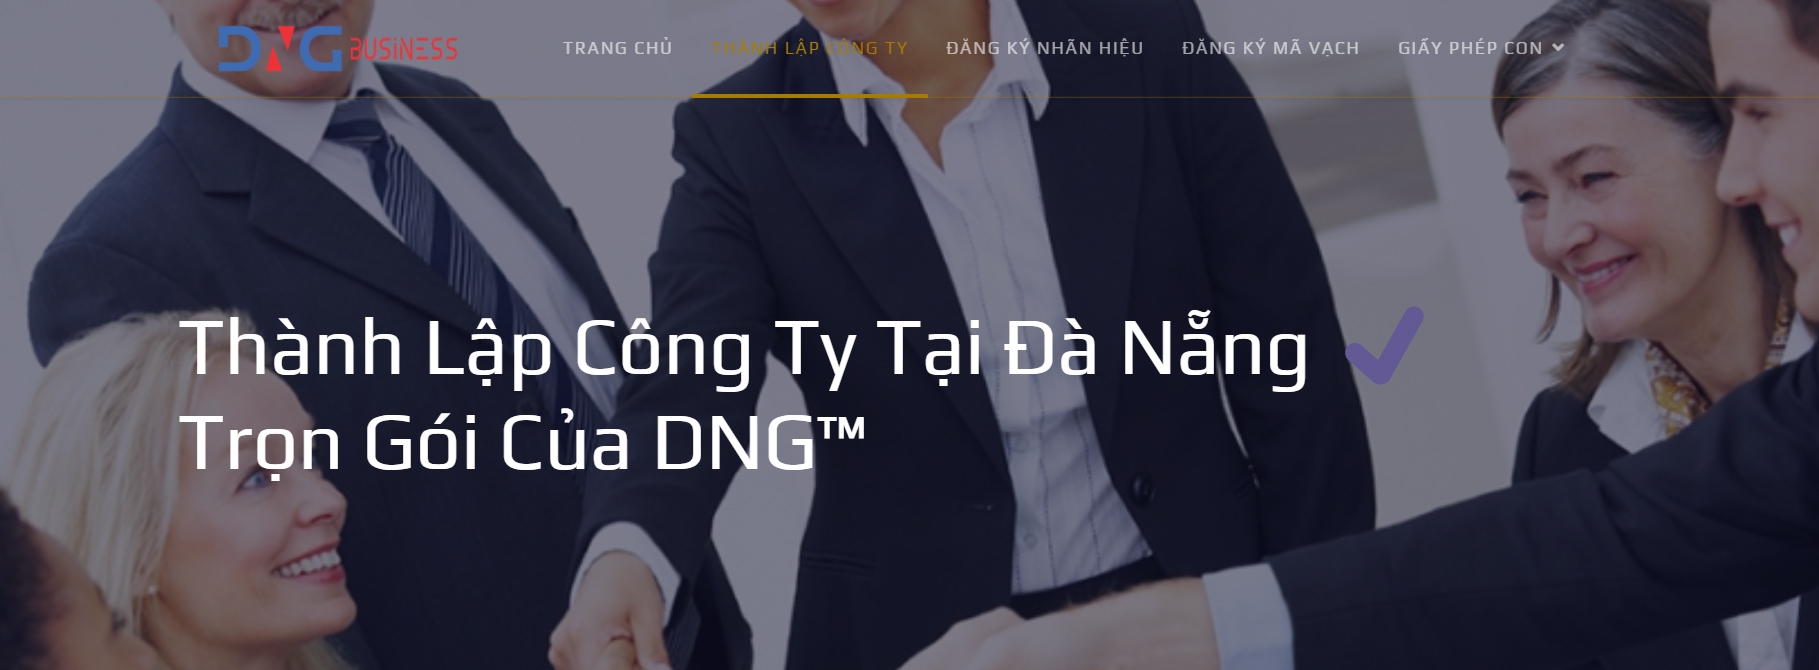 Dịch vụ thành lập công ty tại Đà Nẵng của DNG™ business